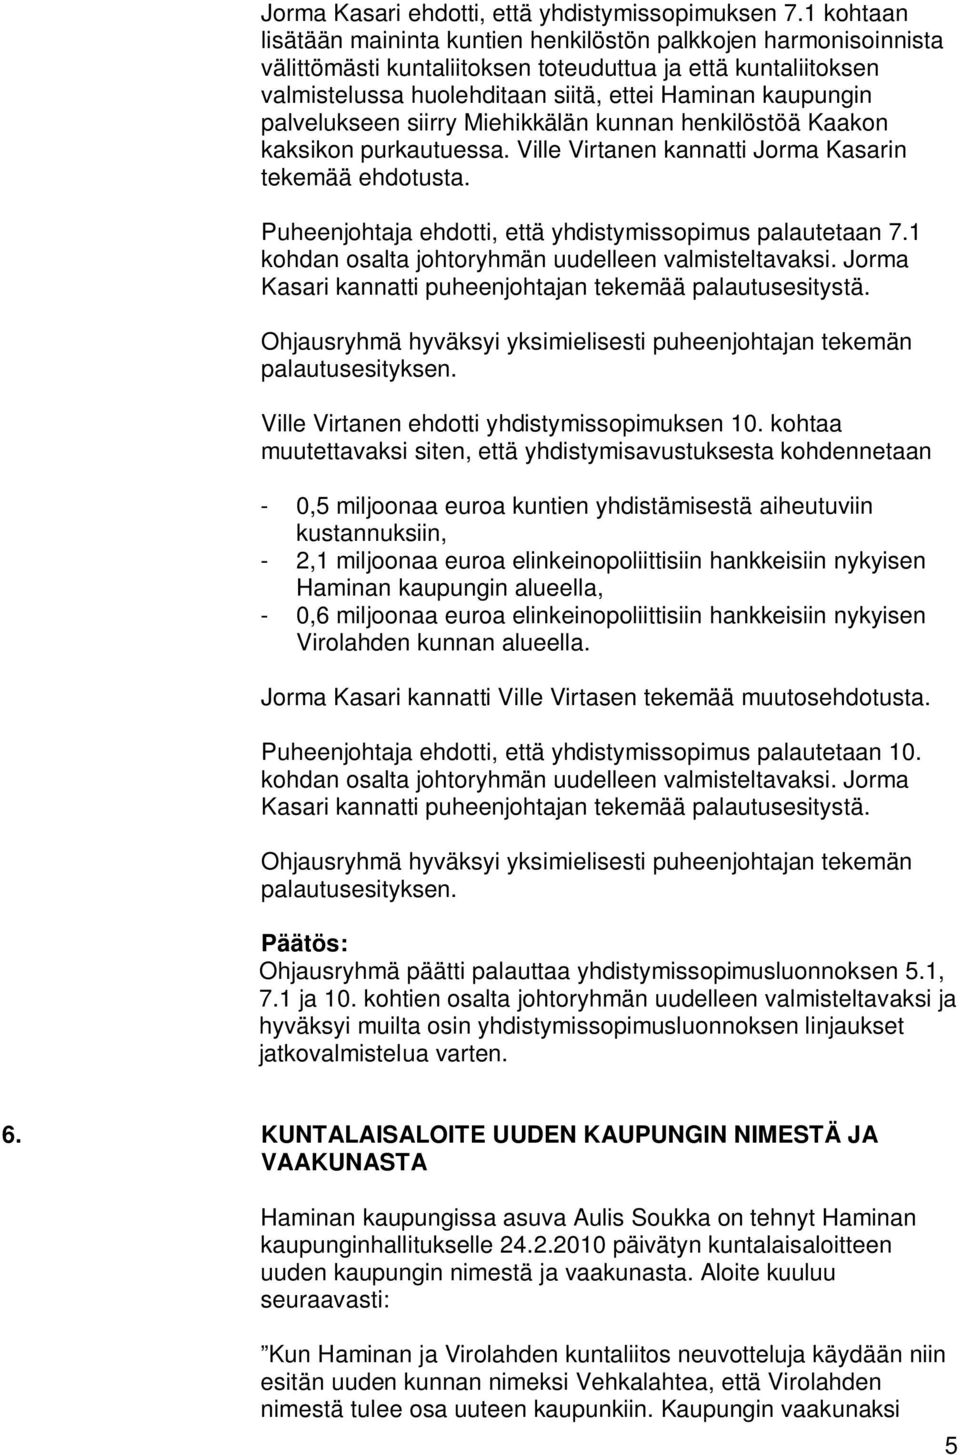 palvelukseen siirry Miehikkälän kunnan henkilöstöä Kaakon kaksikon purkautuessa. Ville Virtanen kannatti Jorma Kasarin tekemää ehdotusta. Puheenjohtaja ehdotti, että yhdistymissopimus palautetaan 7.